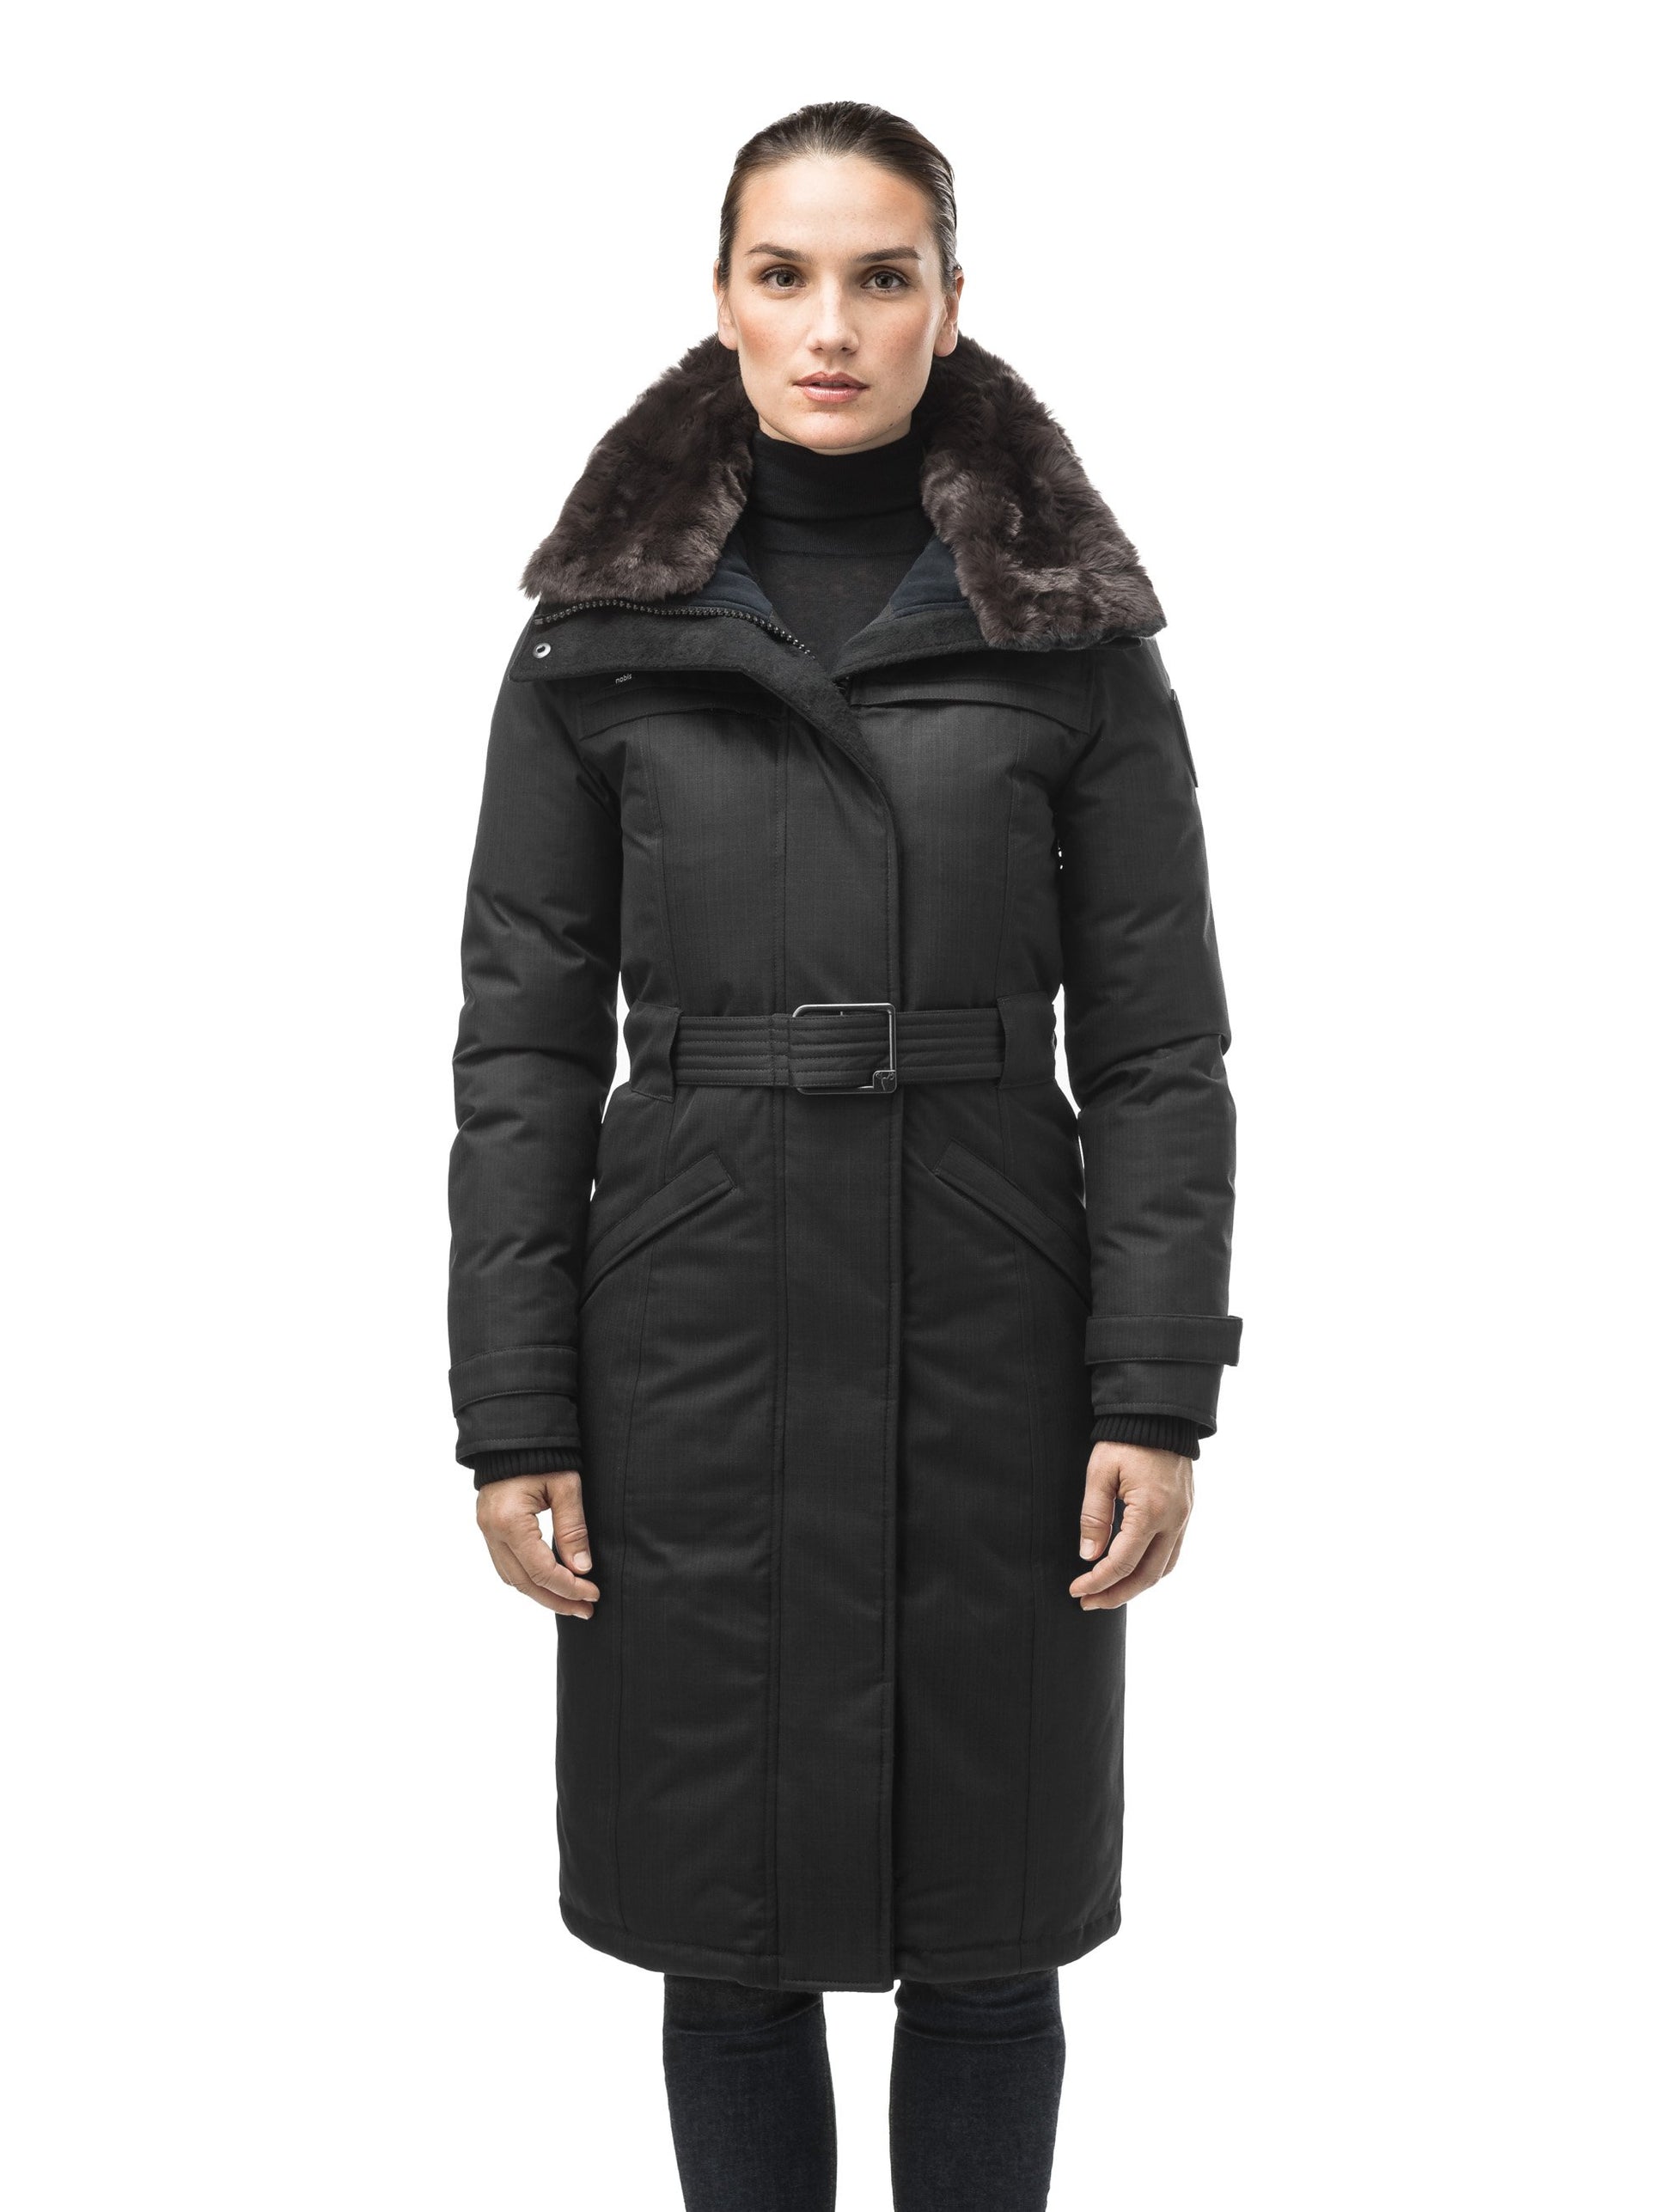 Women's All-Weather Faux Fur-Lined Parka, Women's Sale